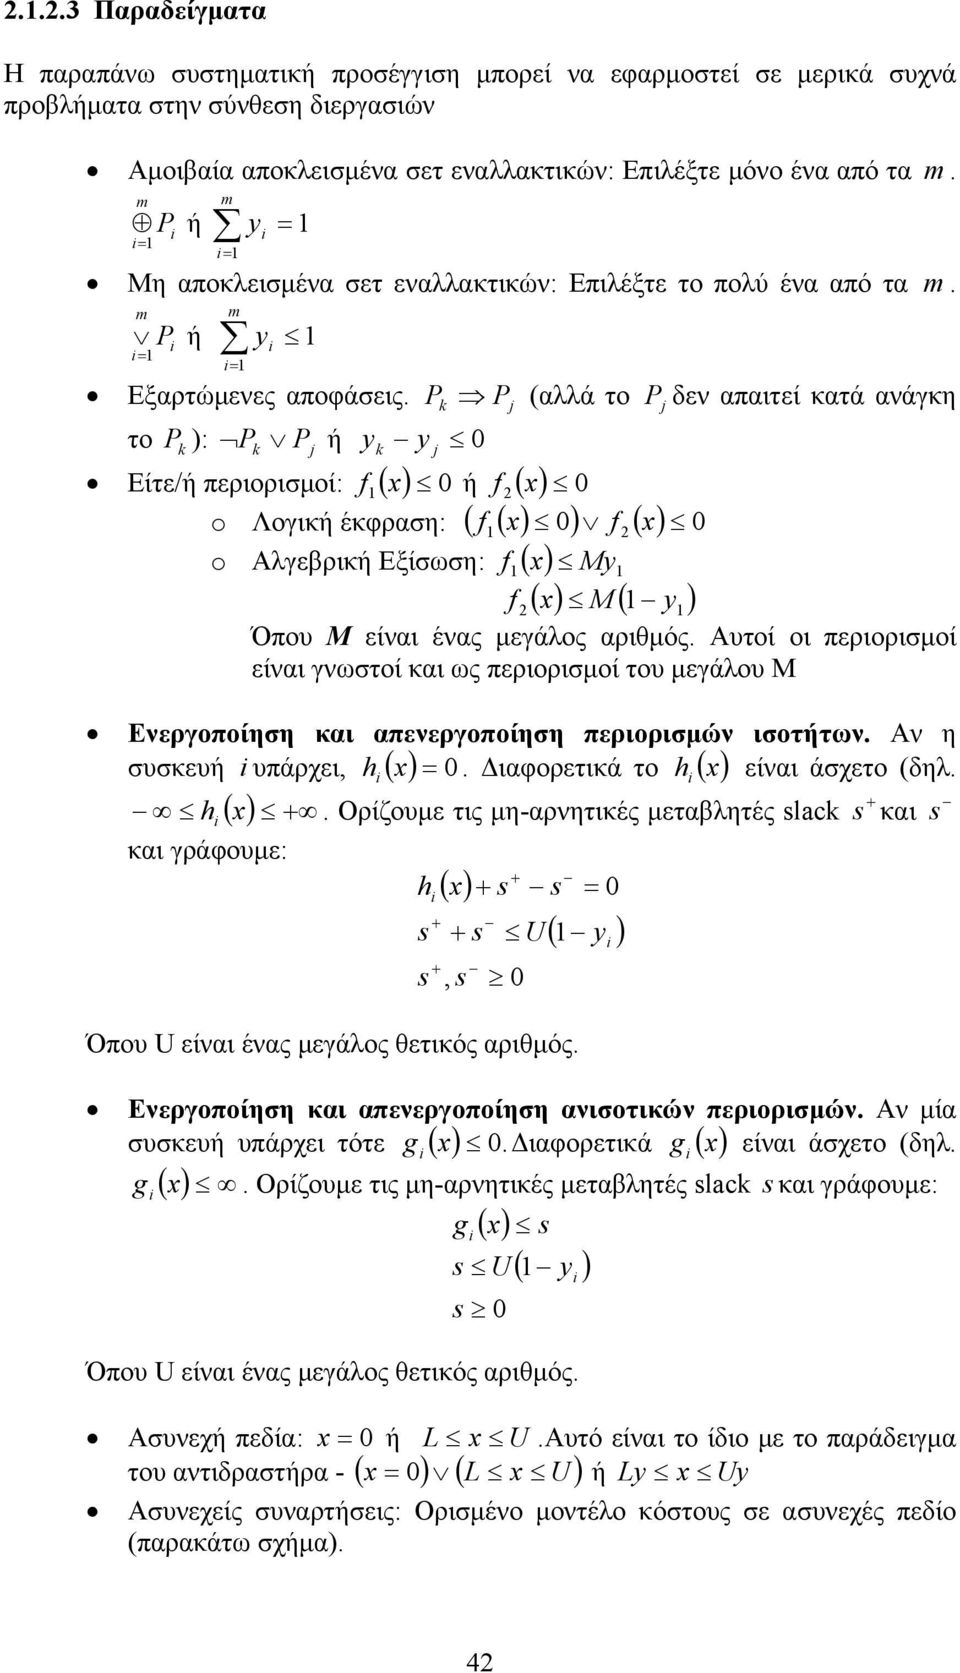 Pk Pj (αλλά το Pj δεν απαιτεί κατά ανάγκη το P k : Pk Pj ή k j 0 Είτε/ή περιορισμοί: f ( x 0 ή f ( x 0 o Λογική έκφραση: ( f ( x 0 f ( x 0 o Αλγεβρική Εξίσωση: f( x M f ( x M ( Όπου Μ είναι ένας